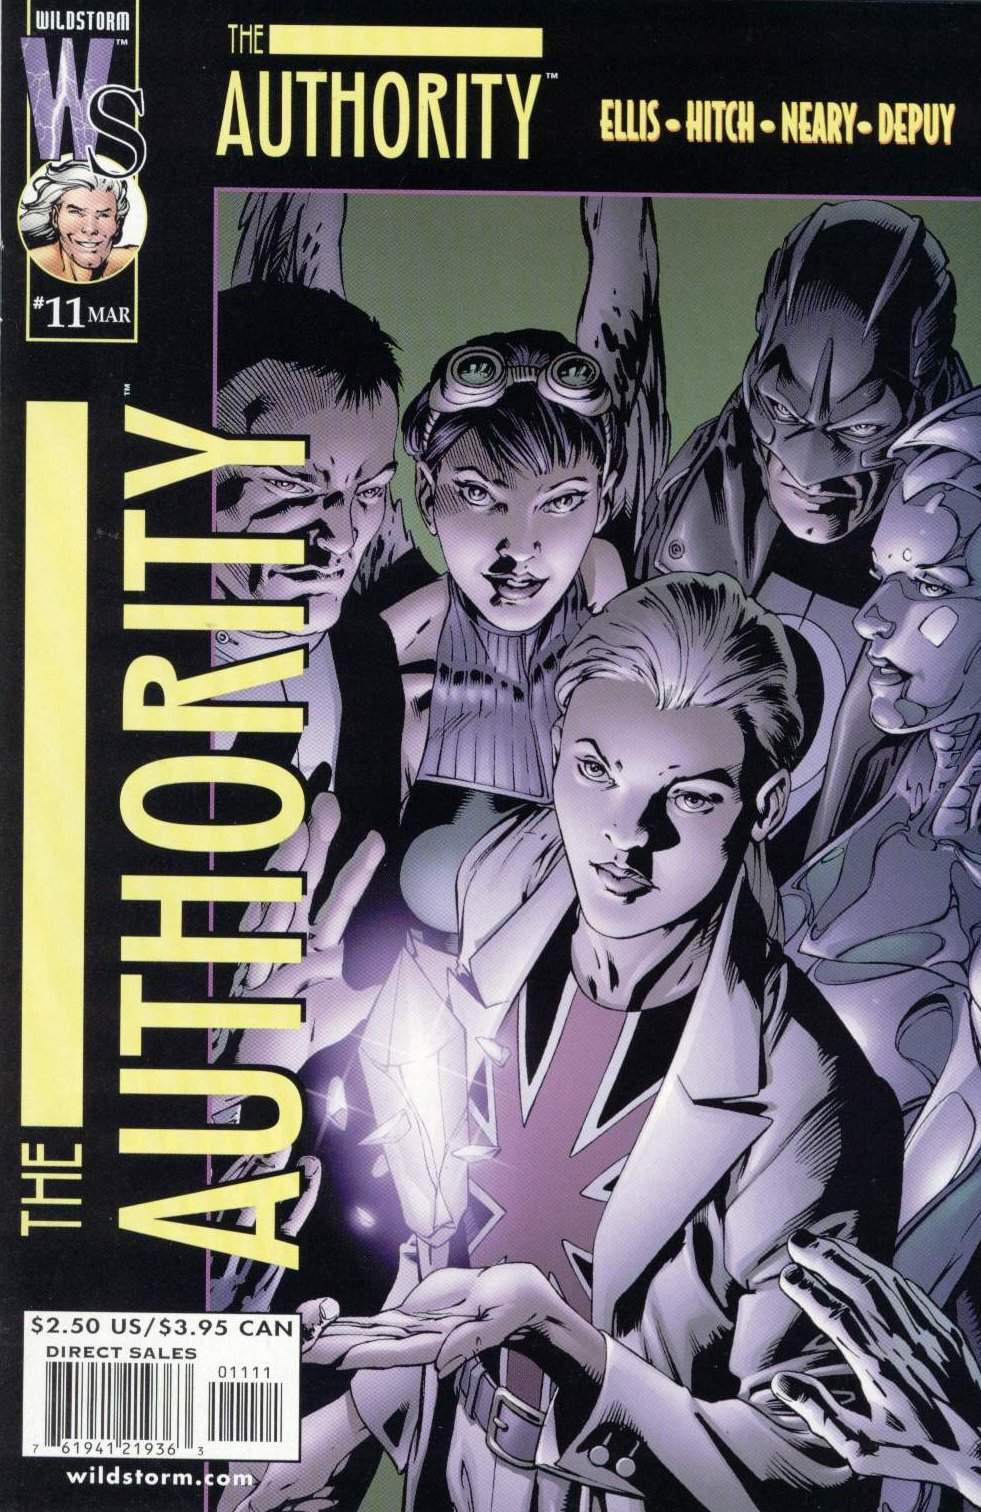 The Authority Vol. 1 #11